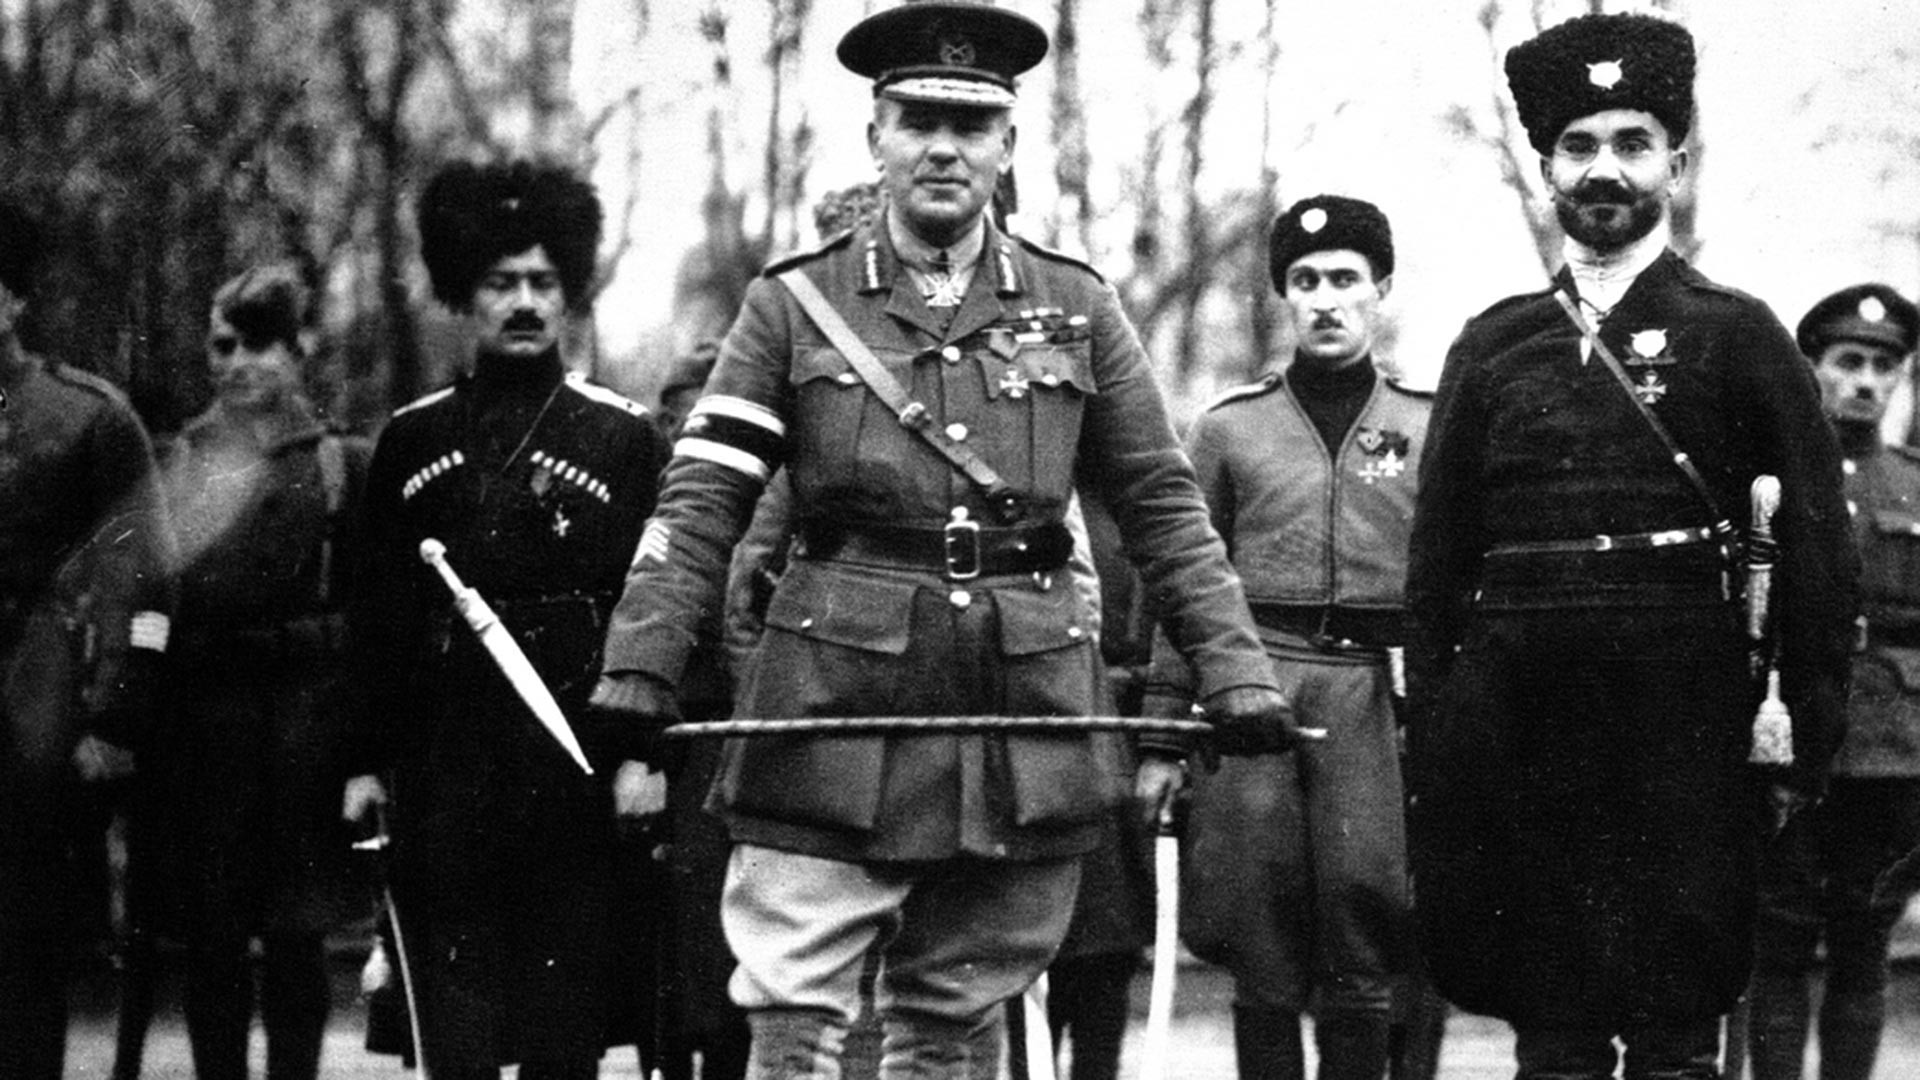 Le général britannique Frederick Poole, commandant les troupes alliées à Arkhangelsk jusqu'en octobre 1918, avec des cosaques. Plus tard, il a été stationné avec l'Armée blanche dans le sud de la Russie.